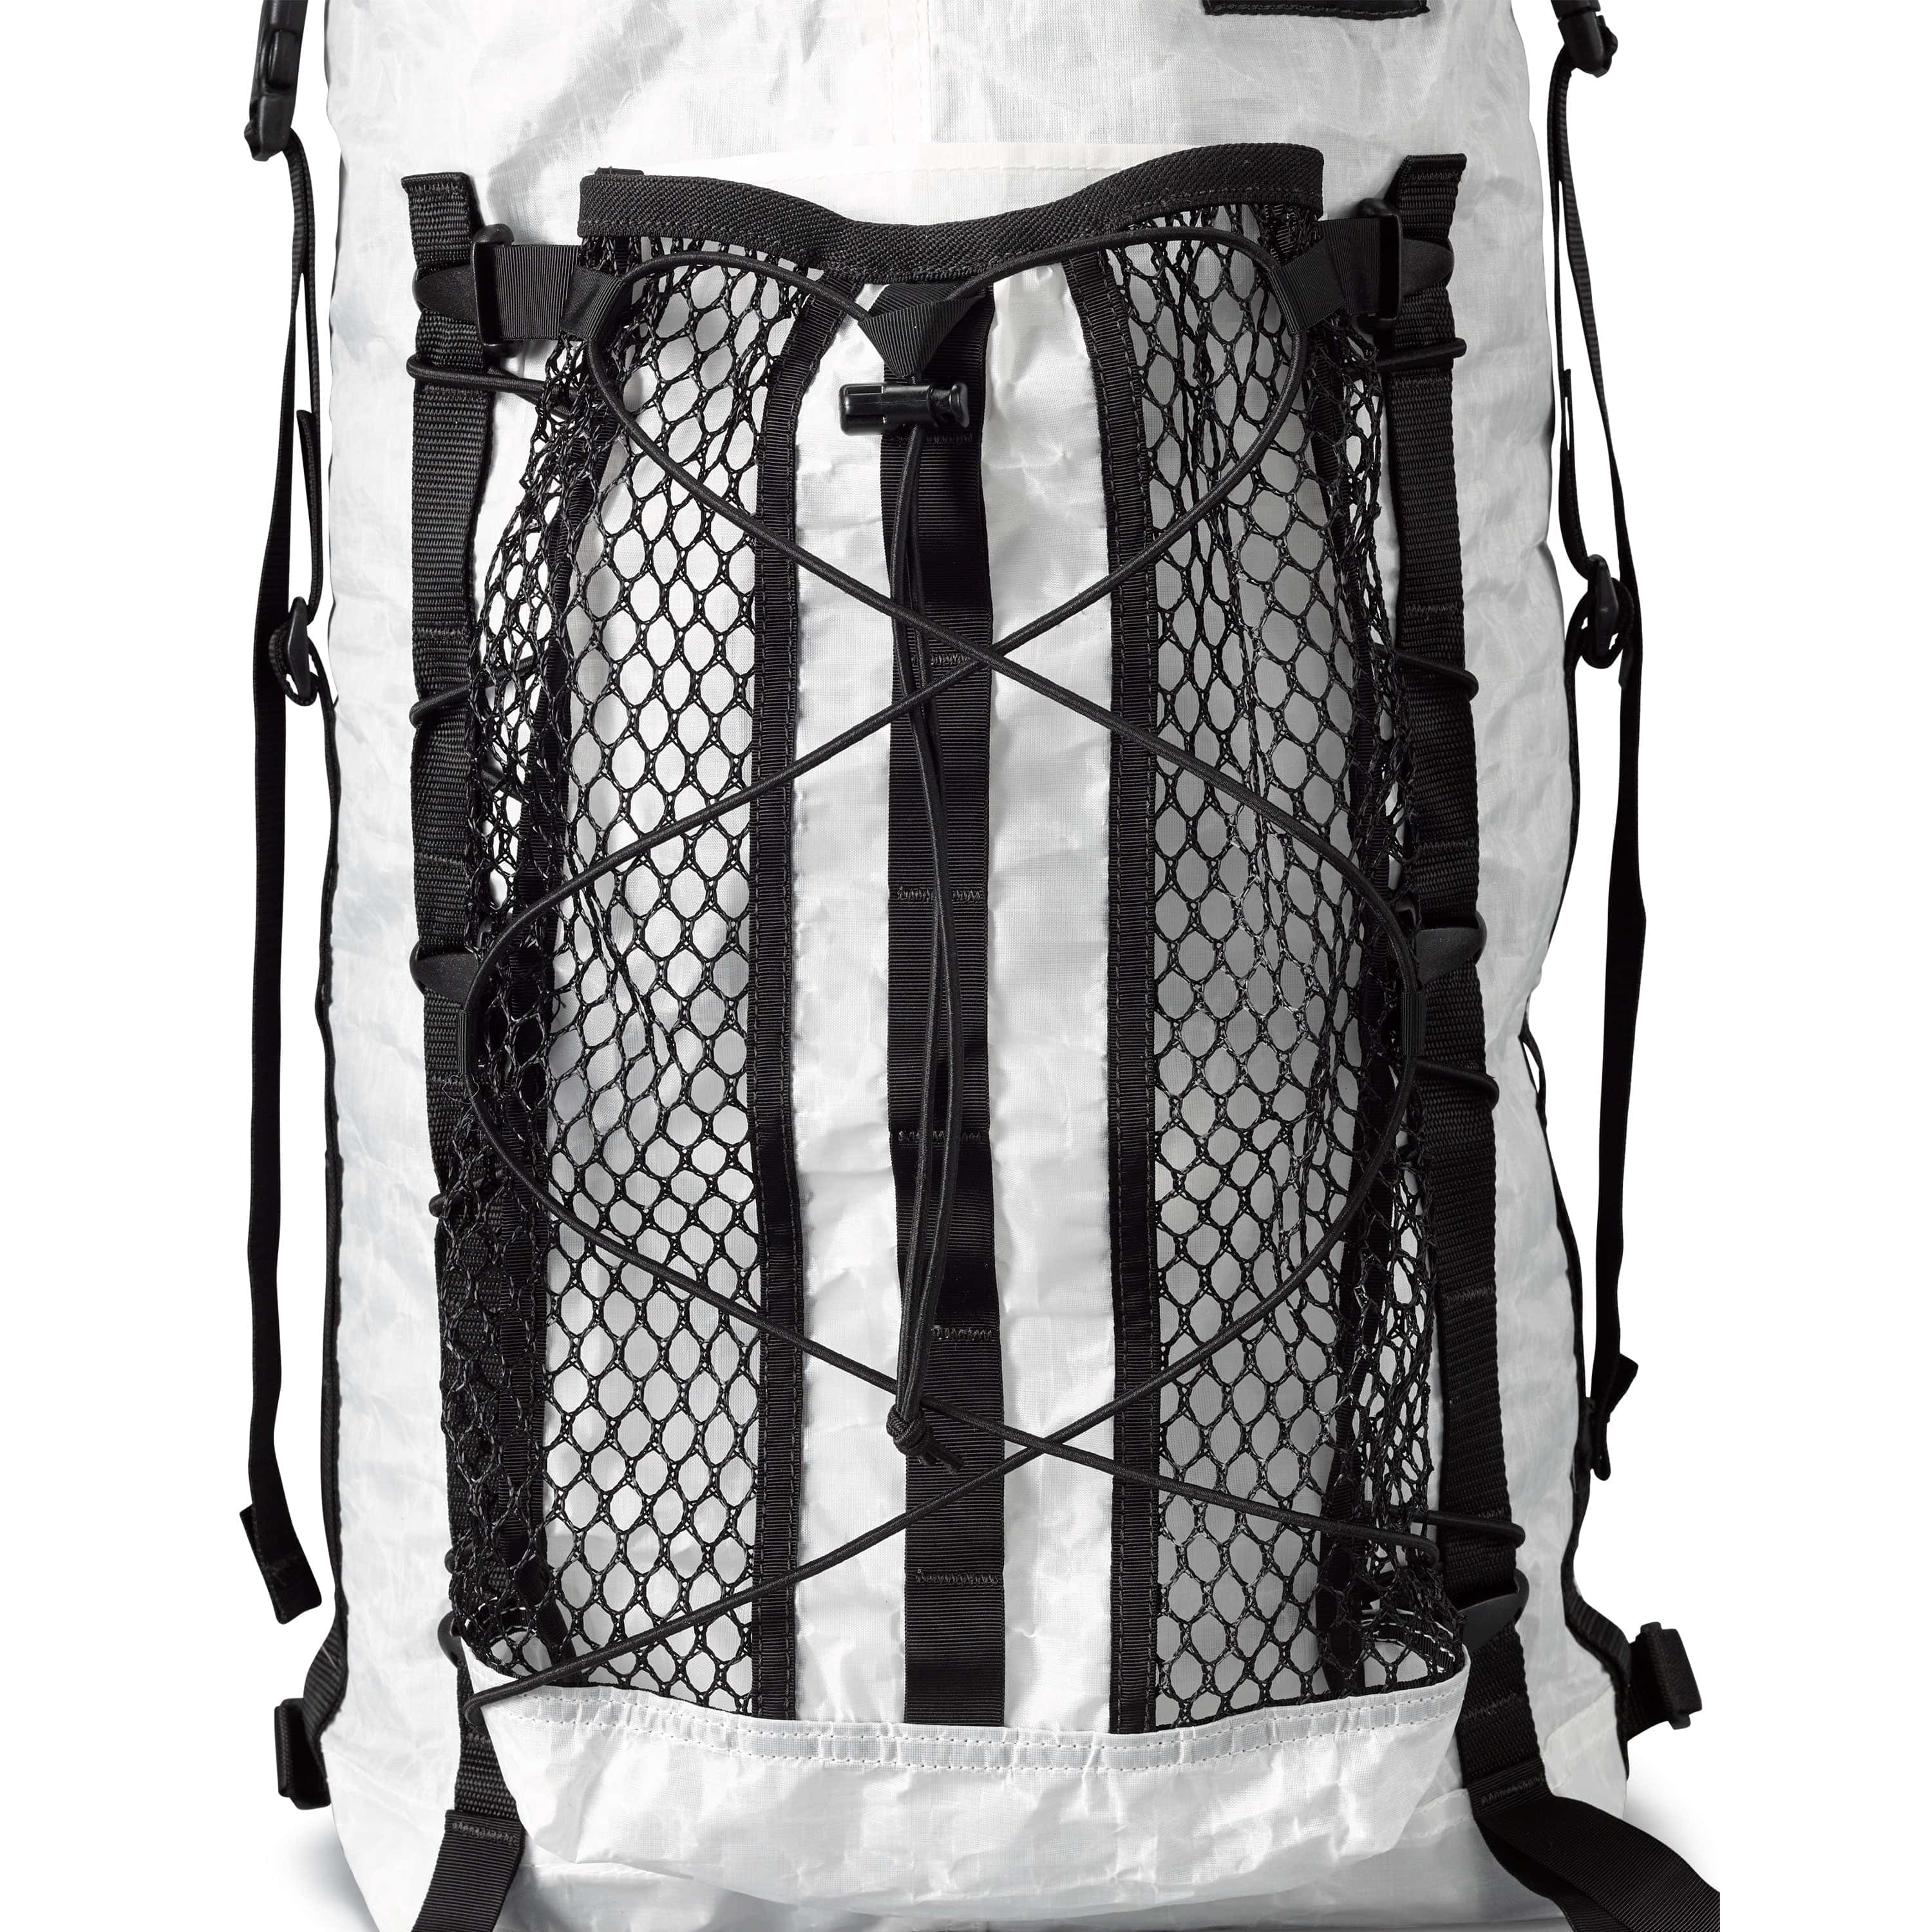 Sea To Summit Lightweight Stuff Sacks | Sleeping Bag Accessories at L.L.Bean